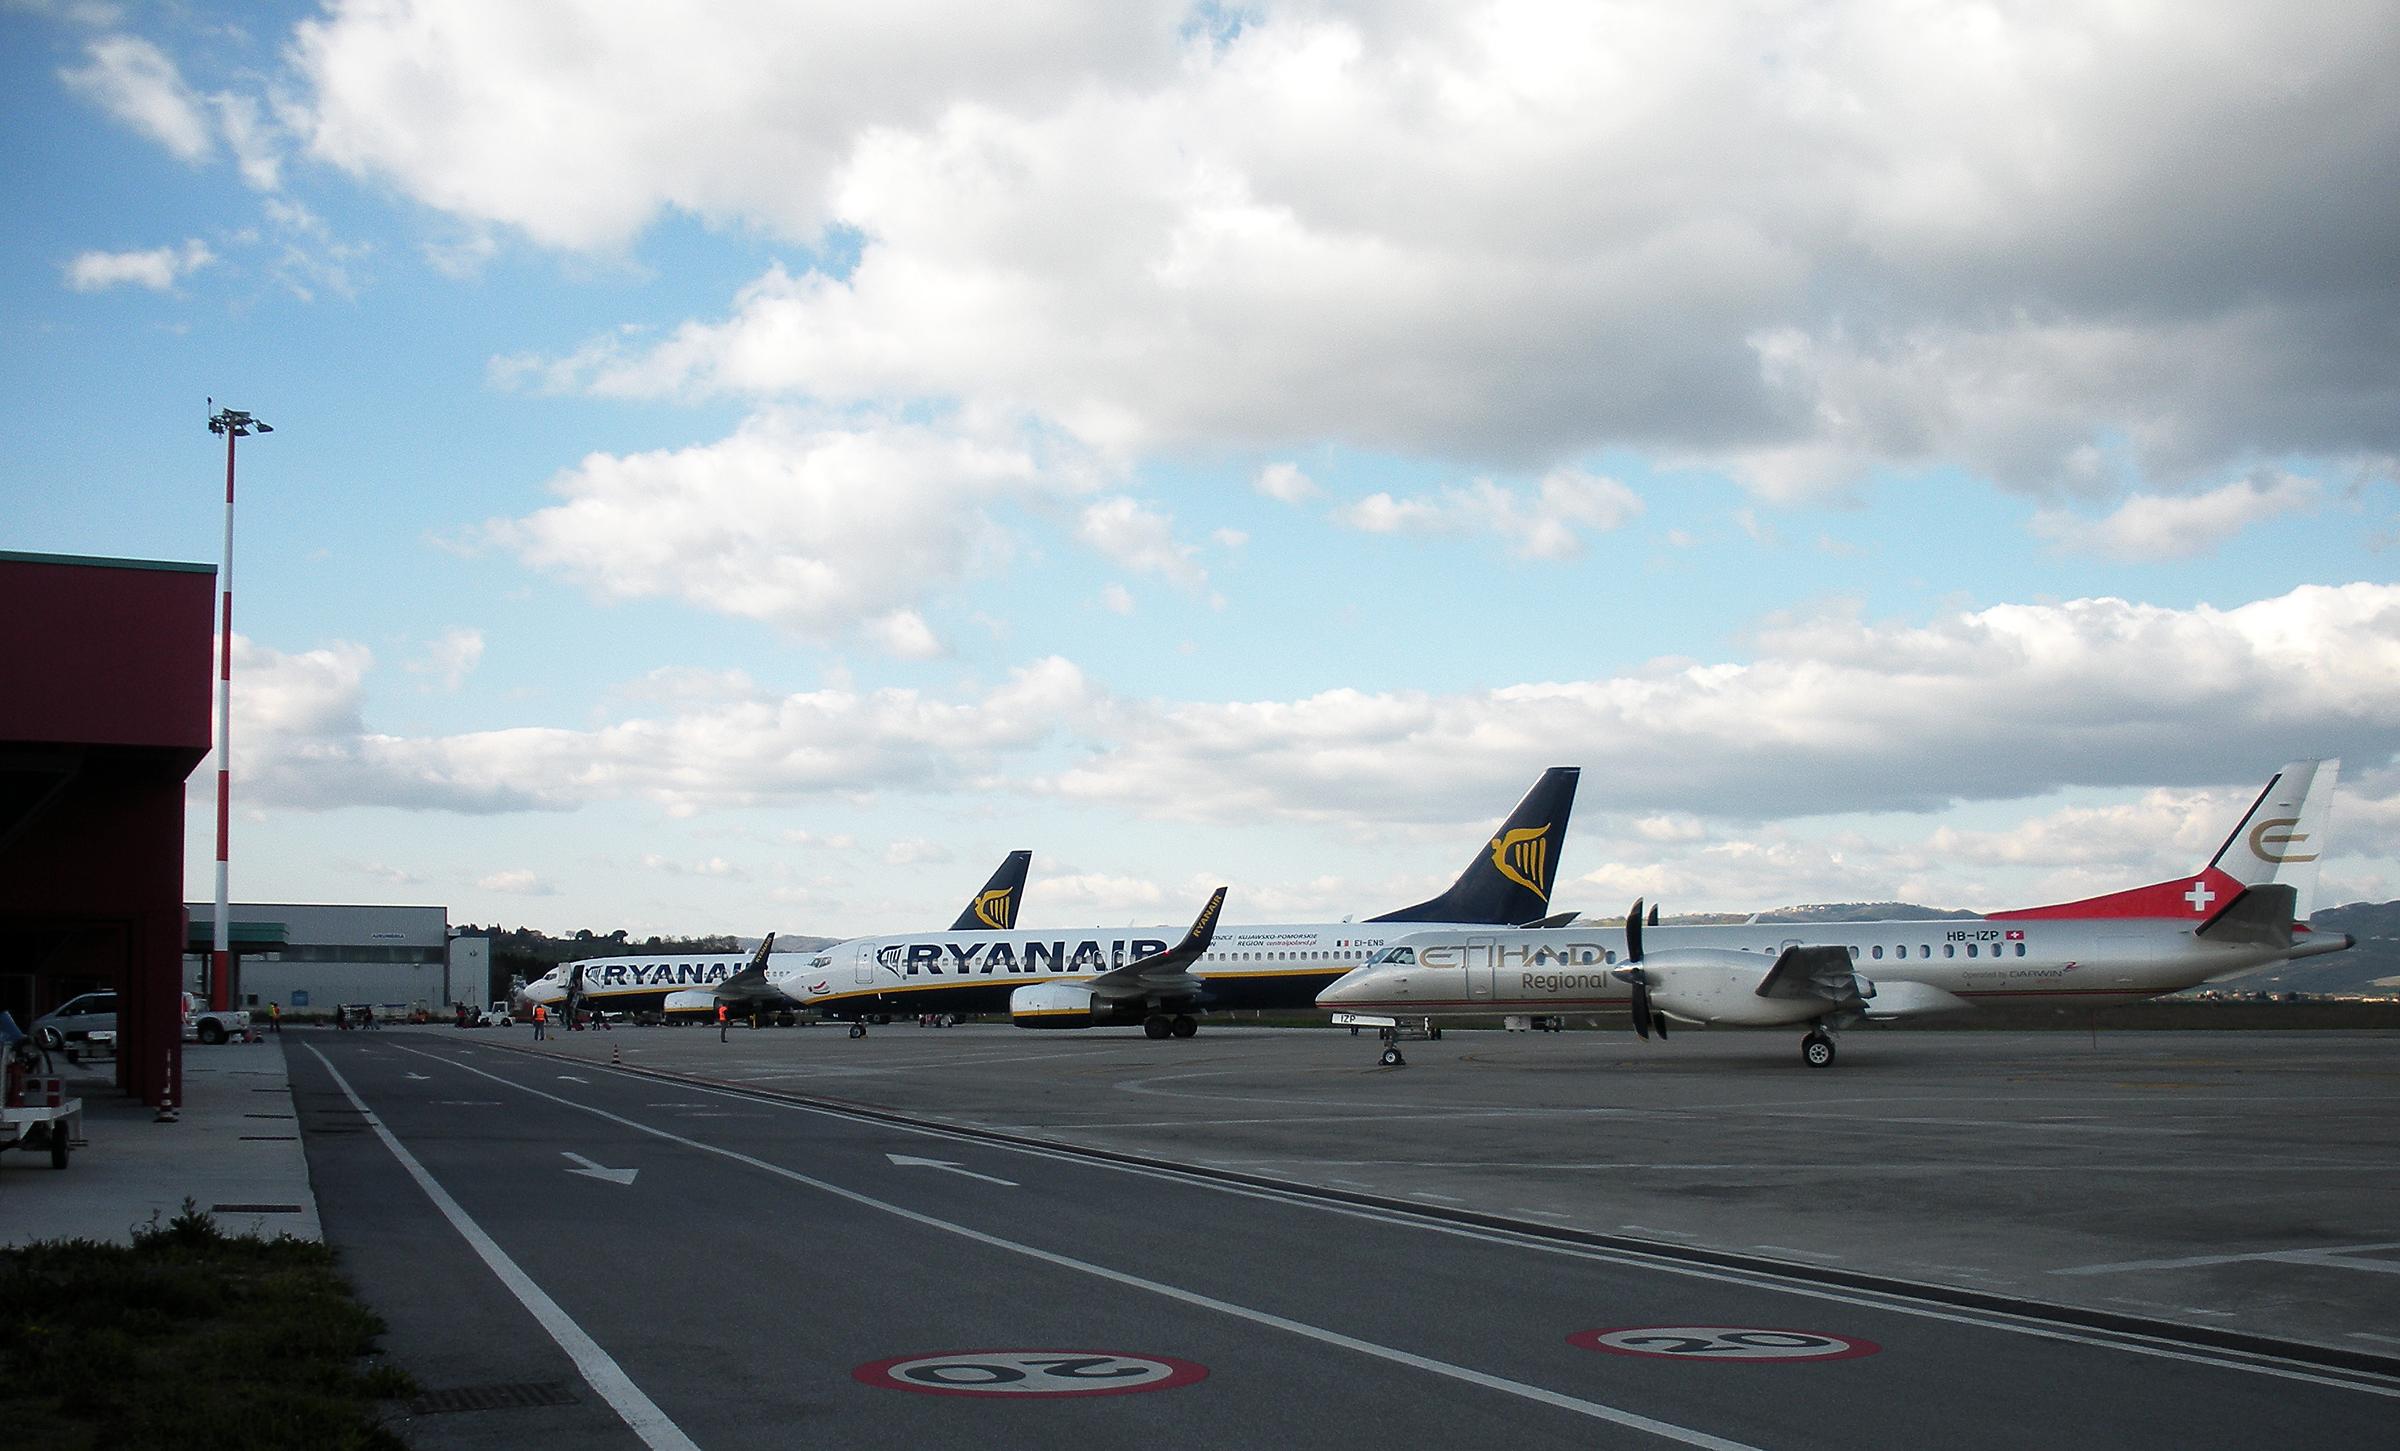 Aeroporto Umbria 7 aprile 2015